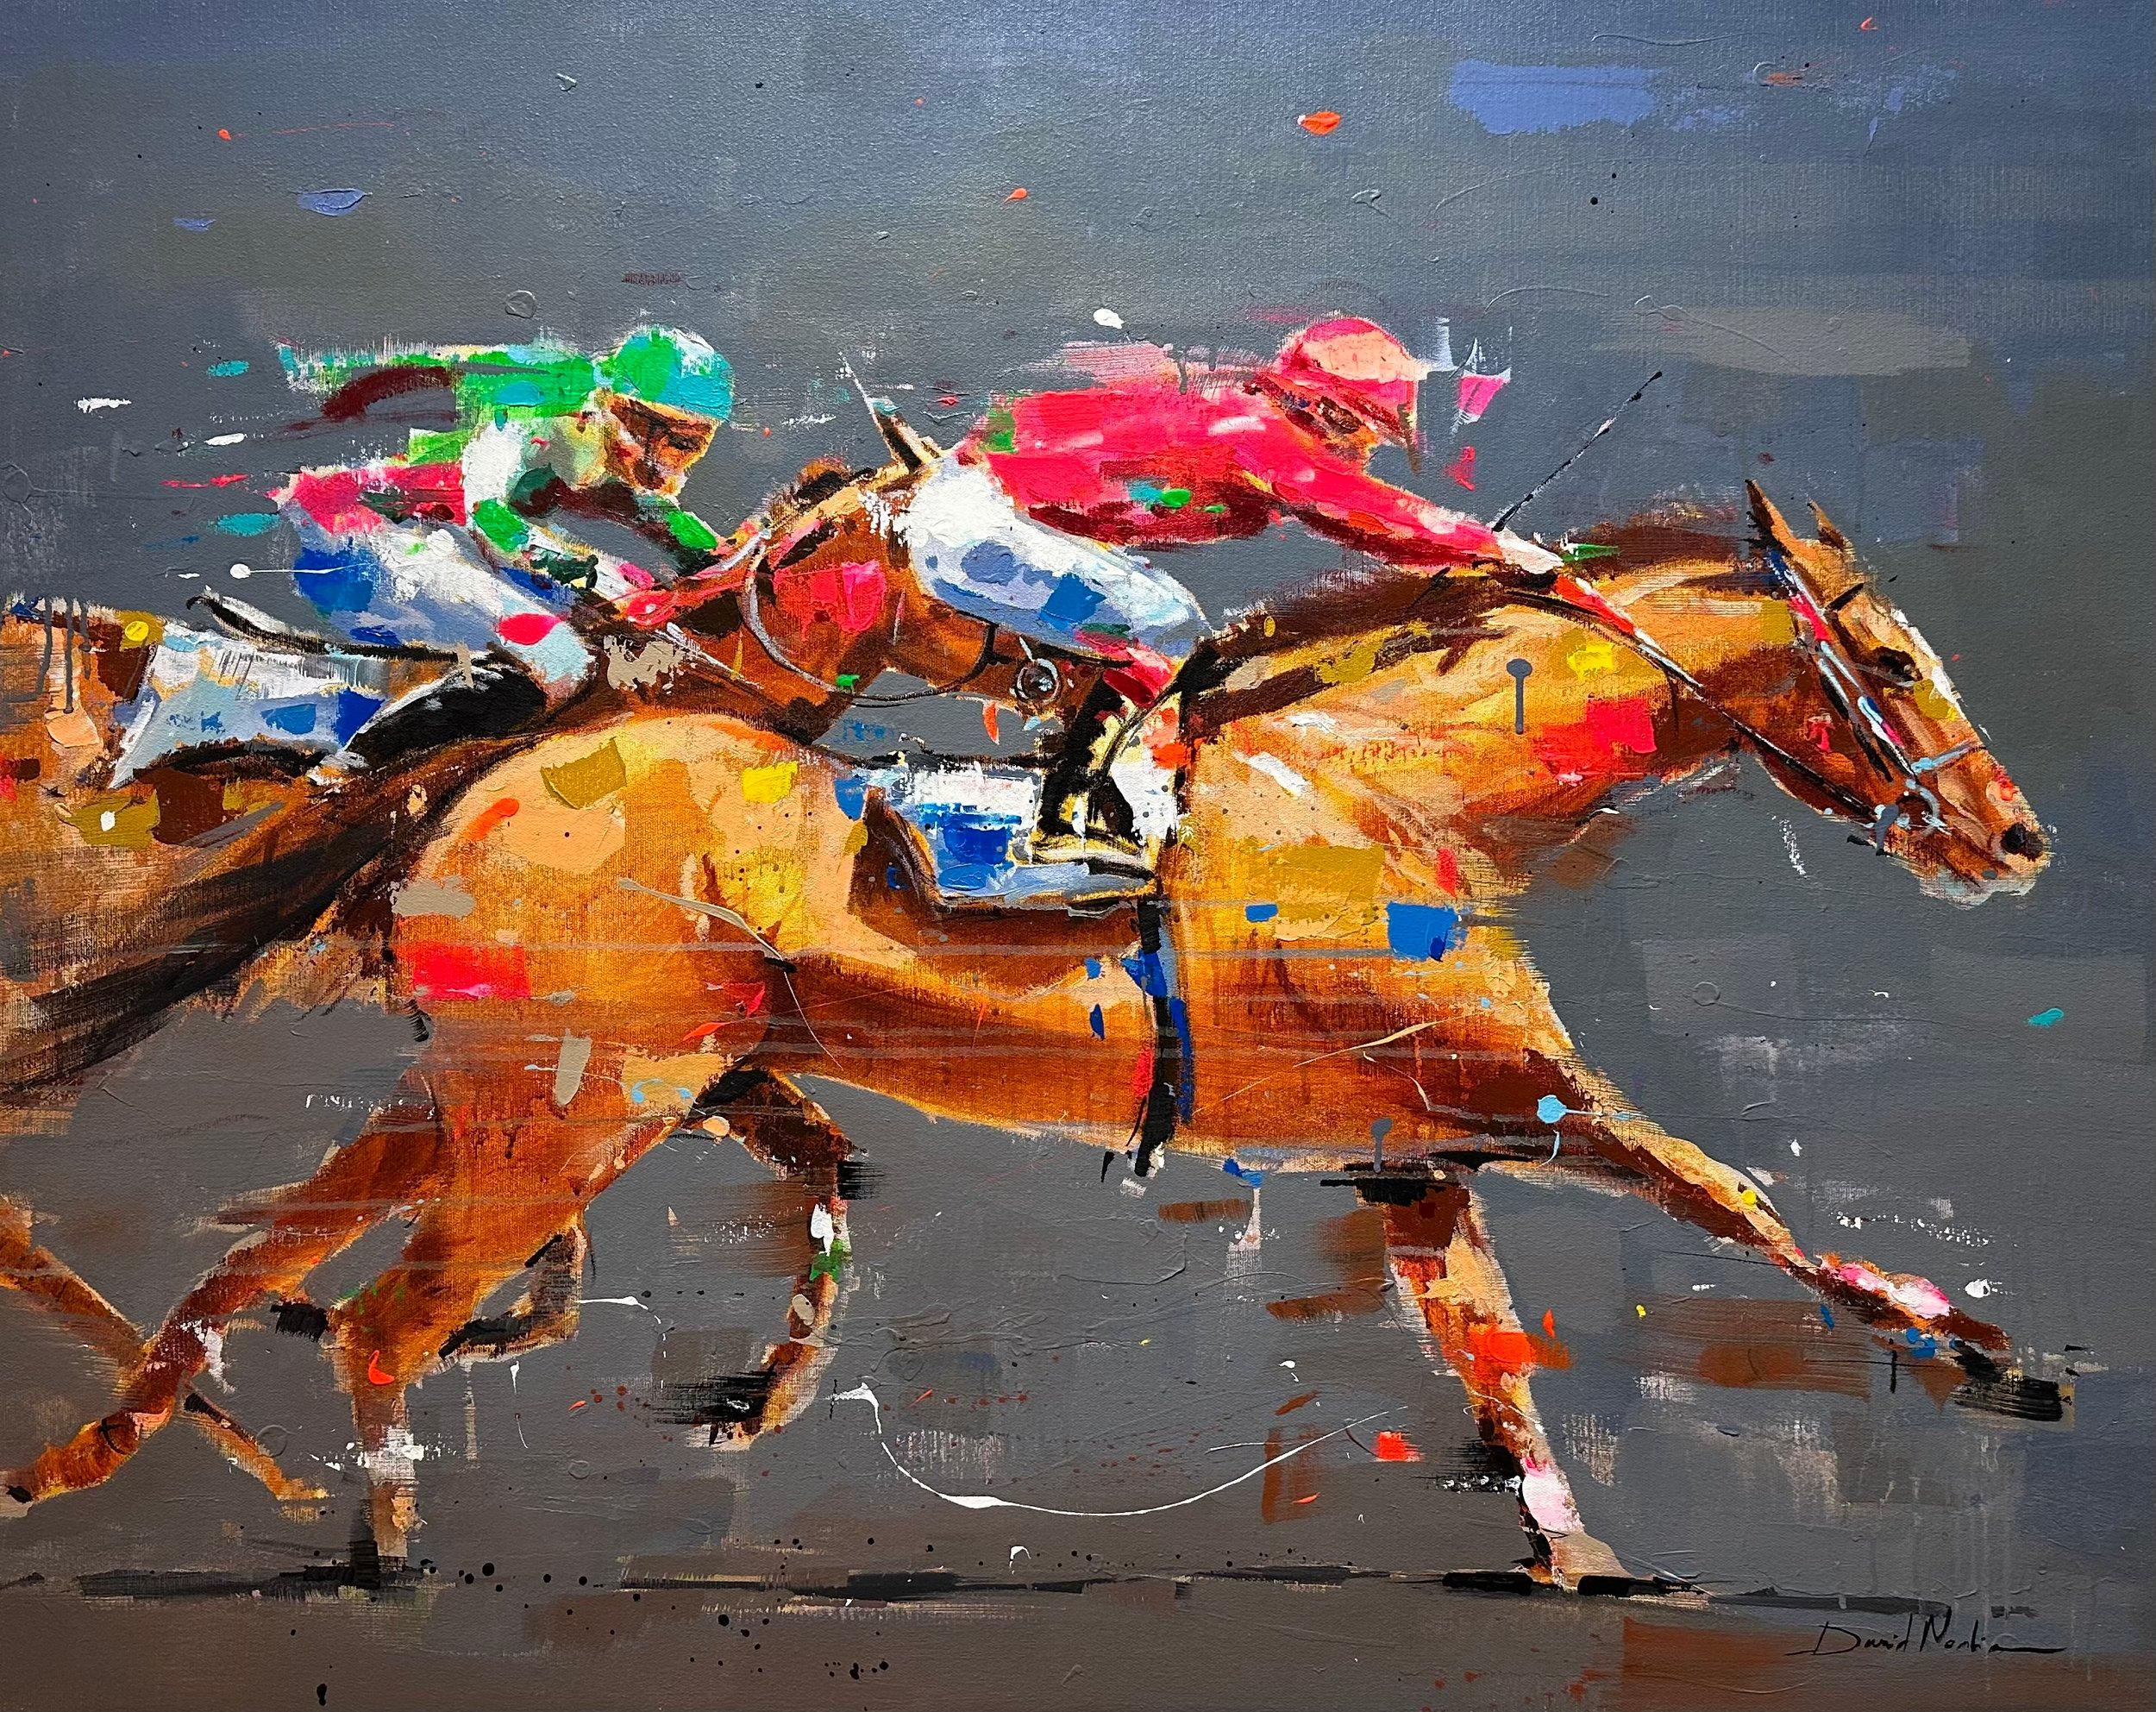 David Noalia, "Strong Stride" 36x45 Peinture équine colorée sur les courses de chevaux